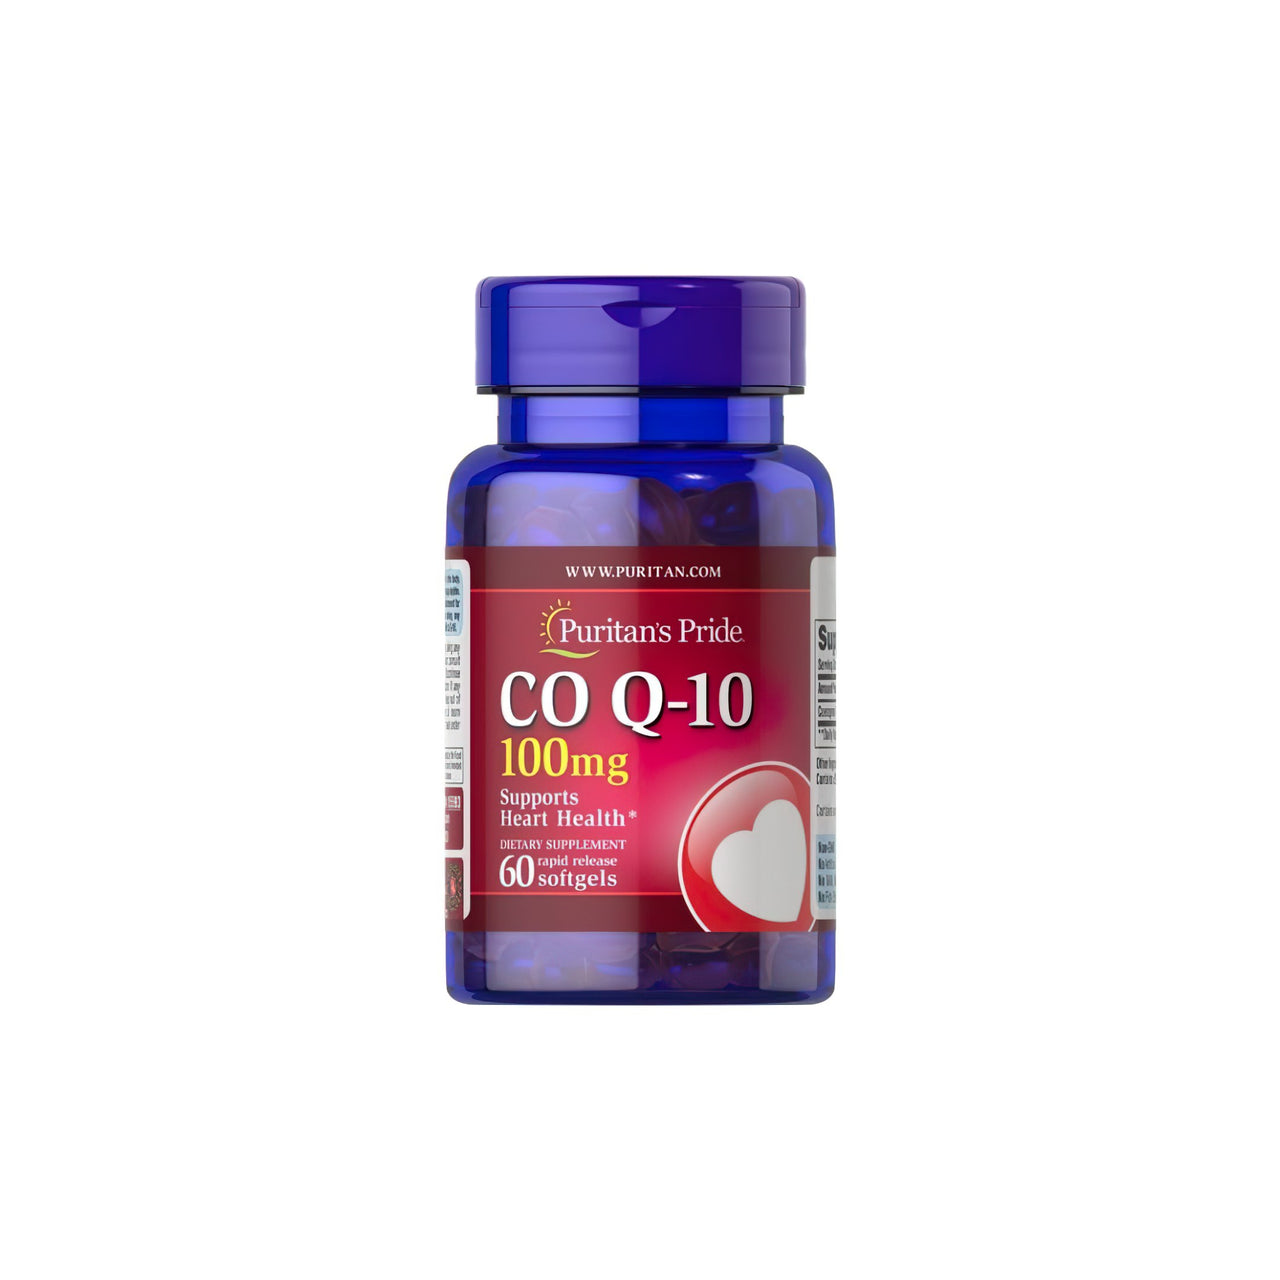 Eine Flasche Q-SORB™ Co Q-10 100 mg 60 schnell freisetzende Softgels von Puritan's Pride, ein Antioxidans, auf einem weißen Hintergrund.